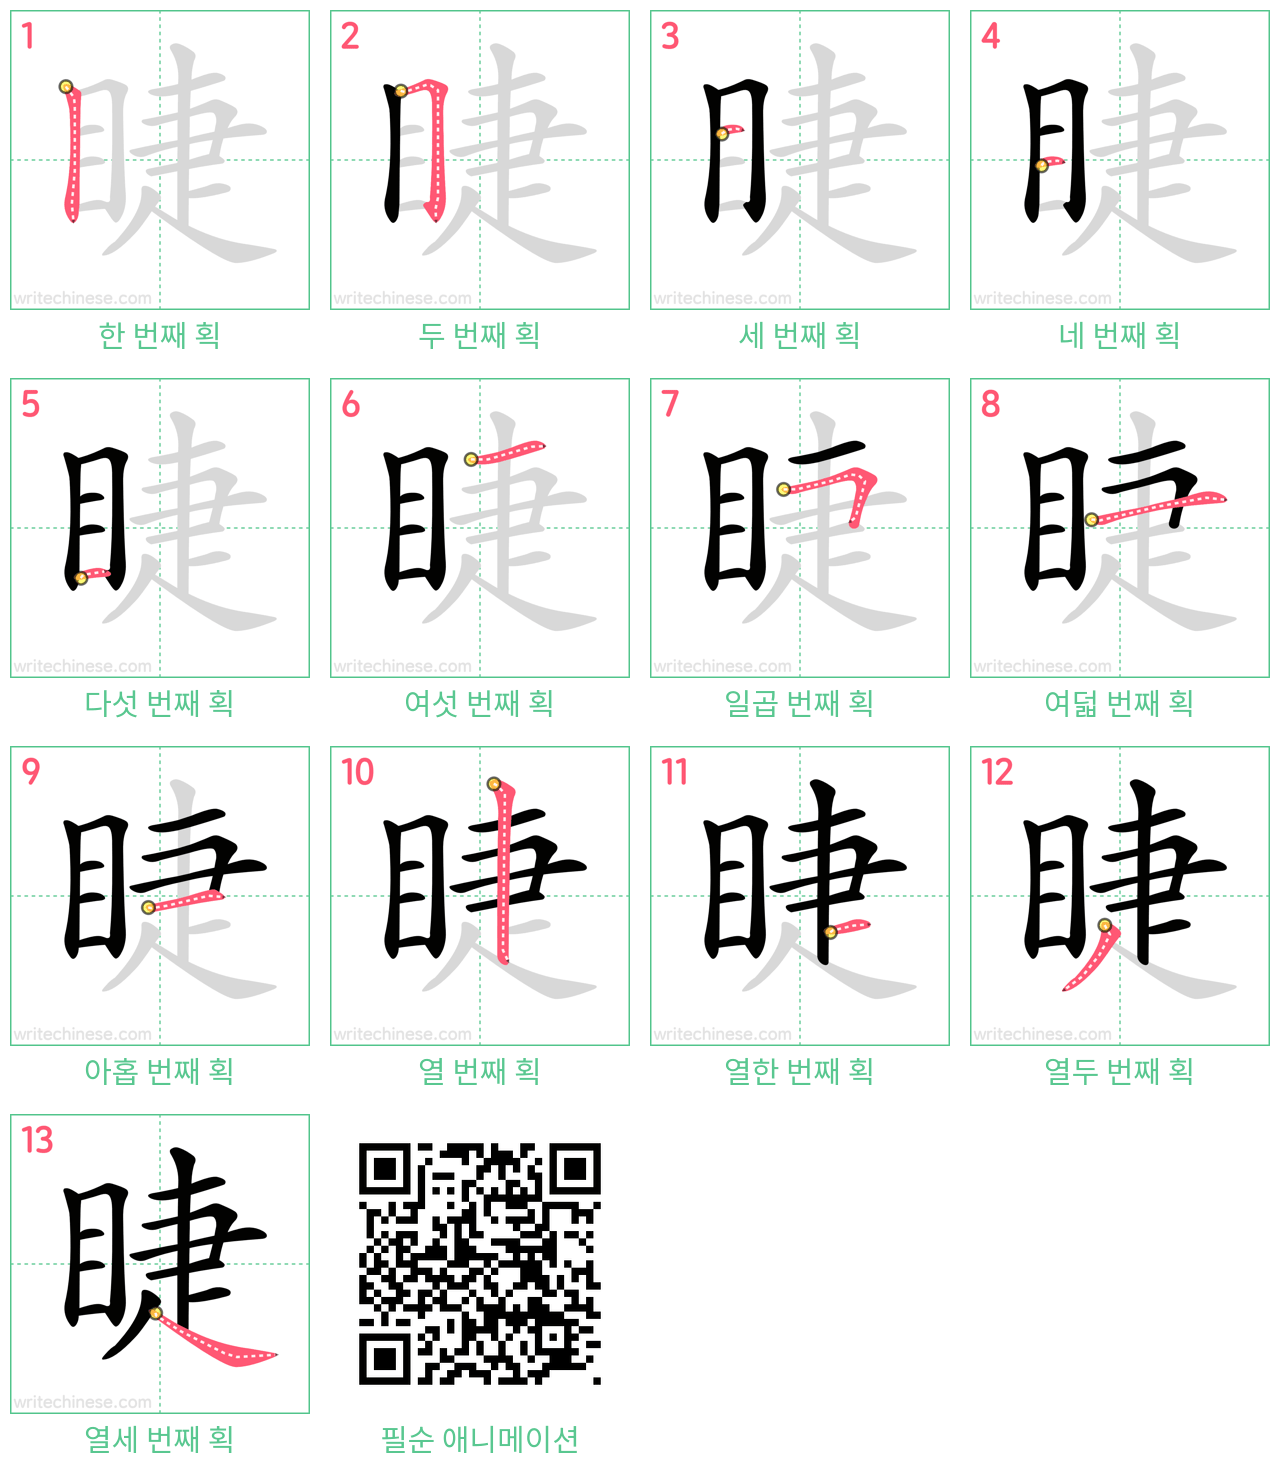 睫 step-by-step stroke order diagrams